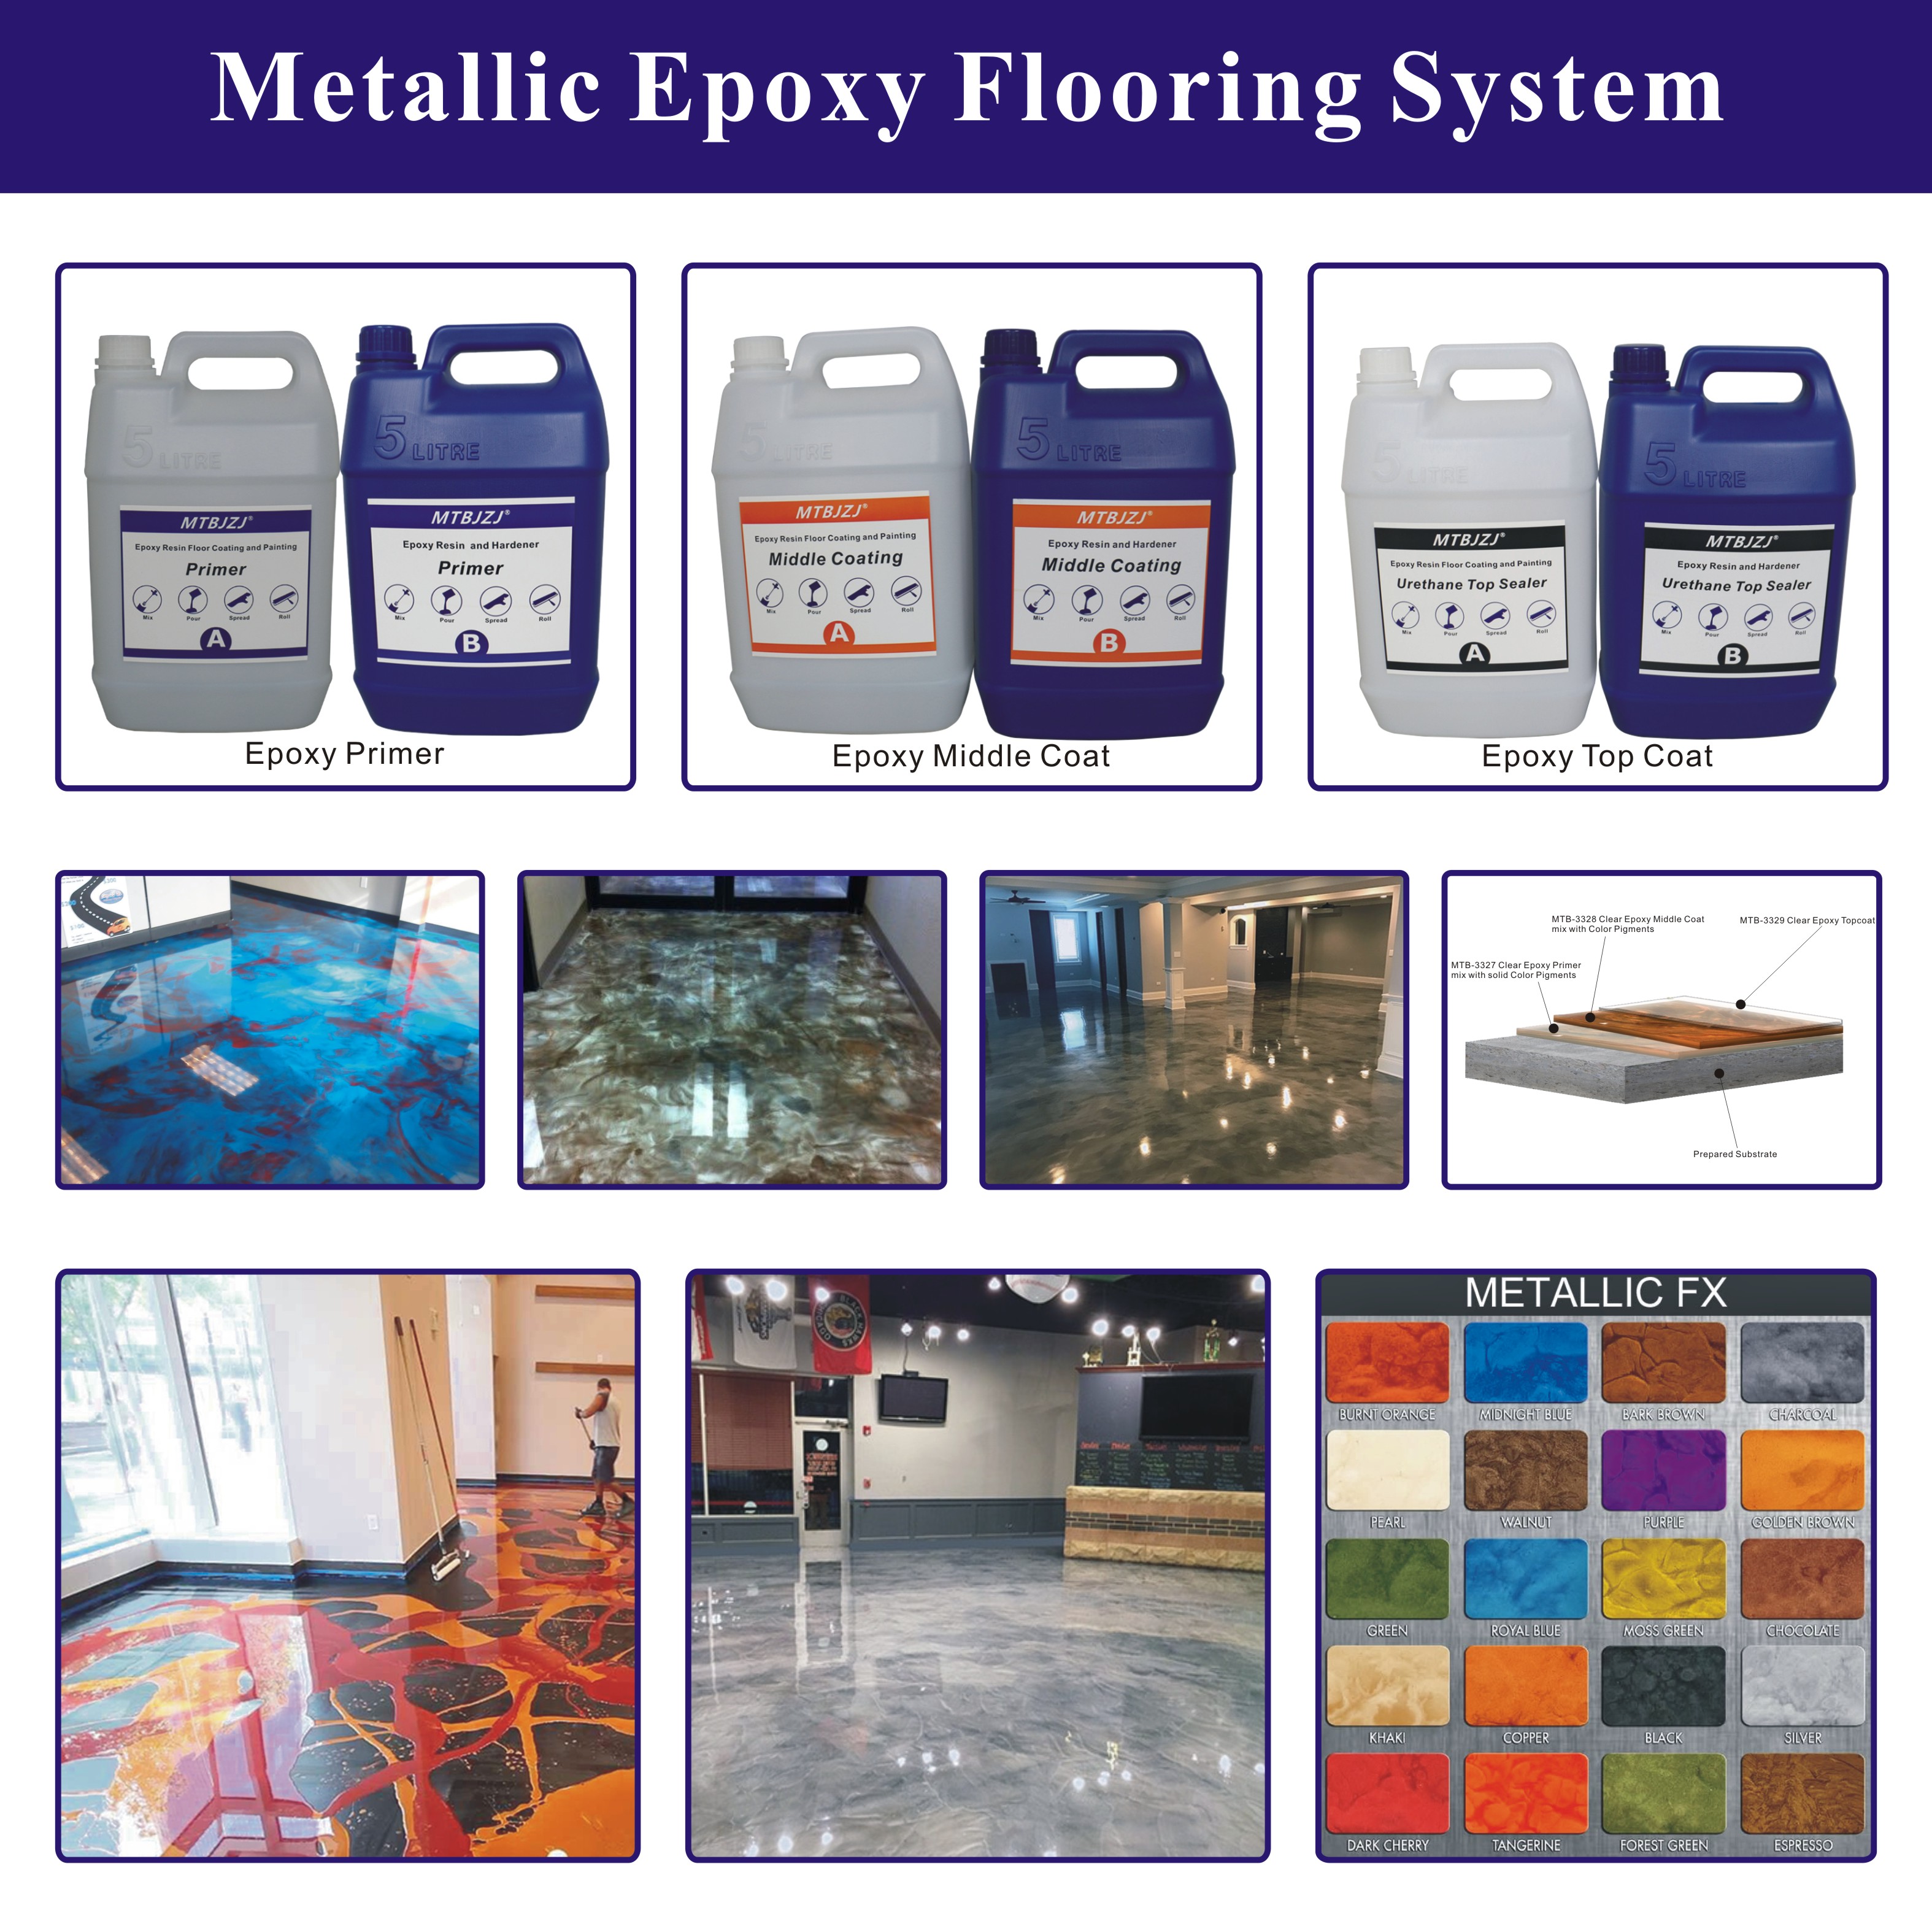 Metallic Epoxy Floor